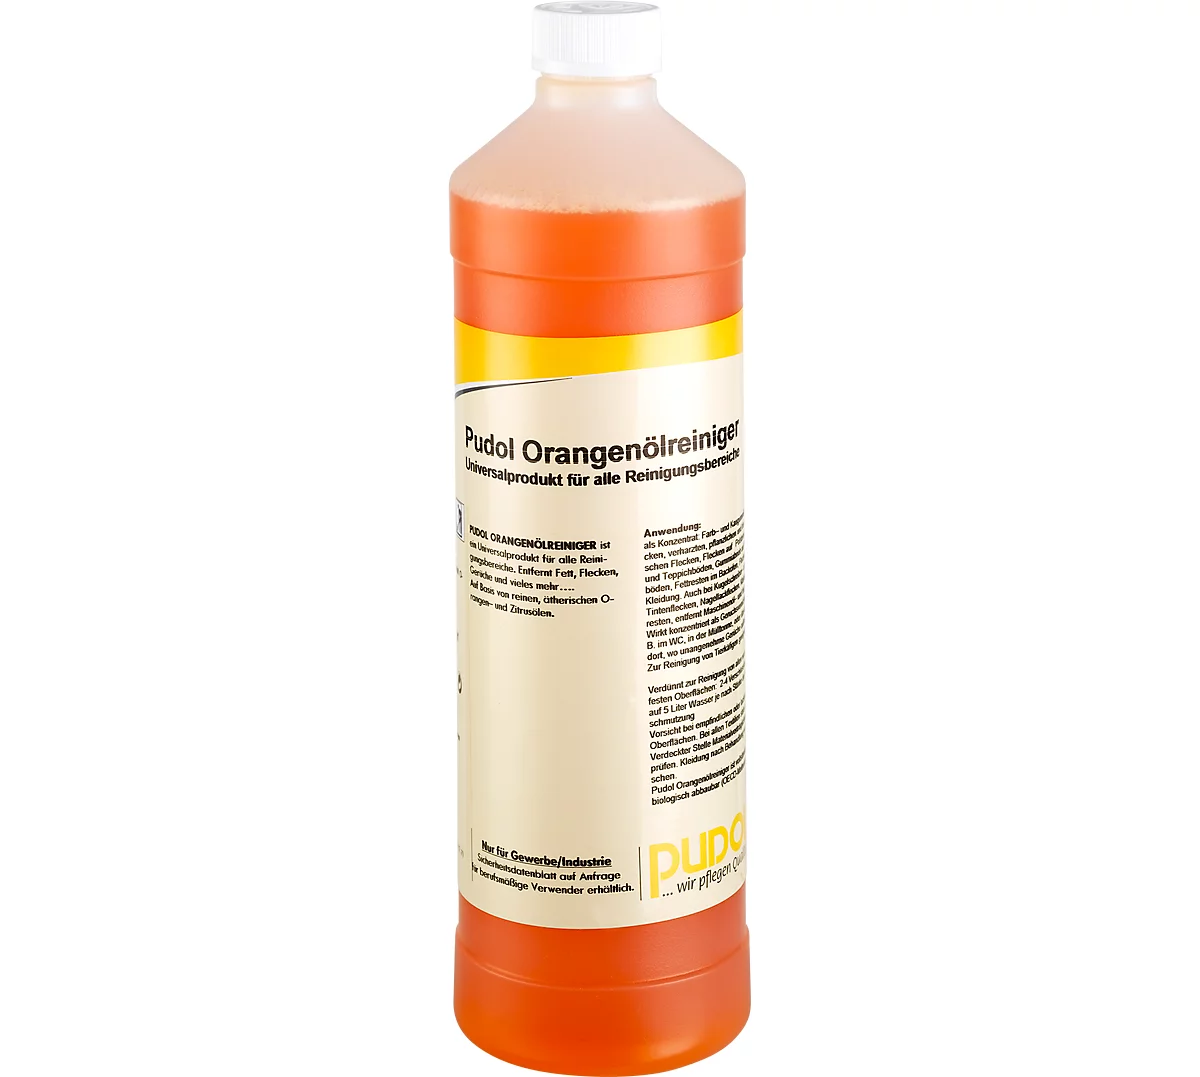 Limpiador universal de aceite de naranja, botella de 1 litro